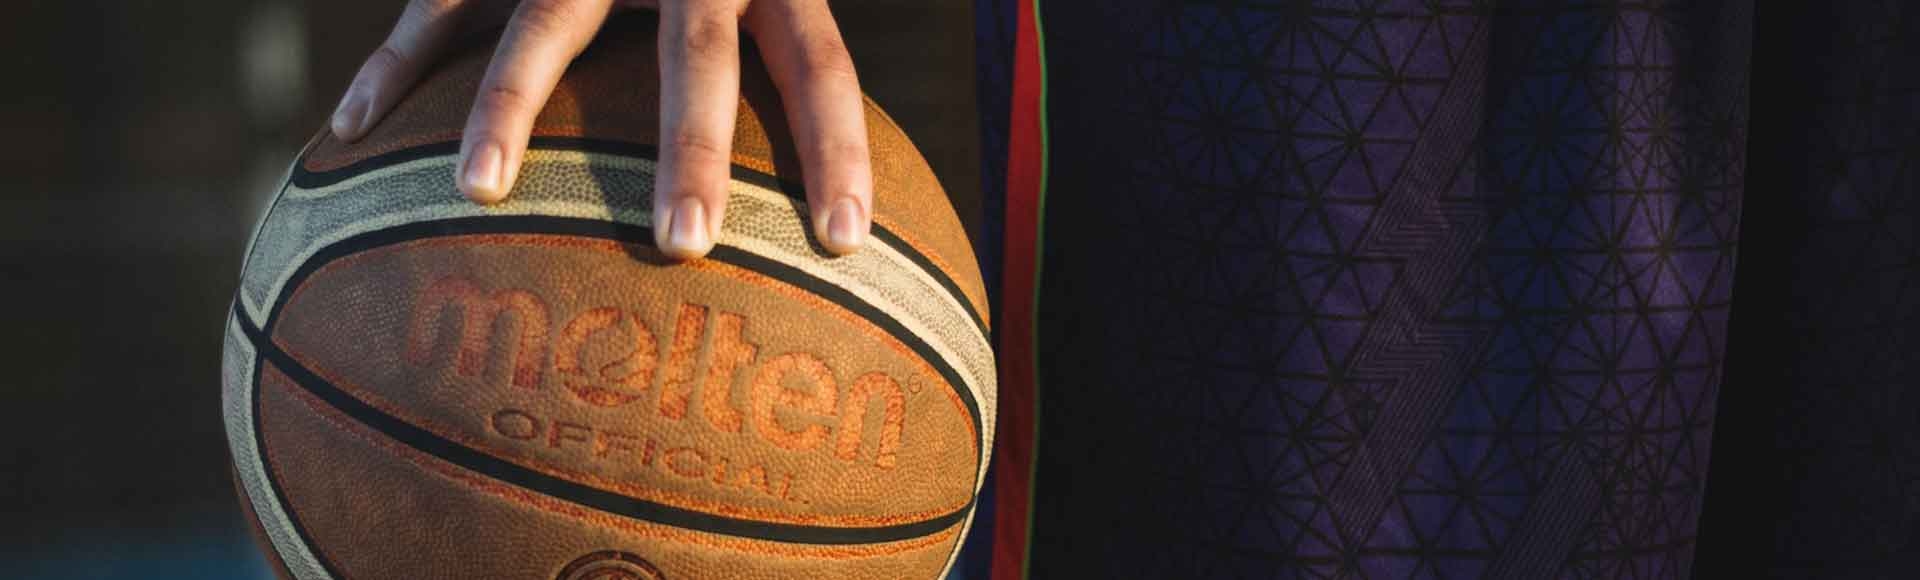 teen gripping a basketball